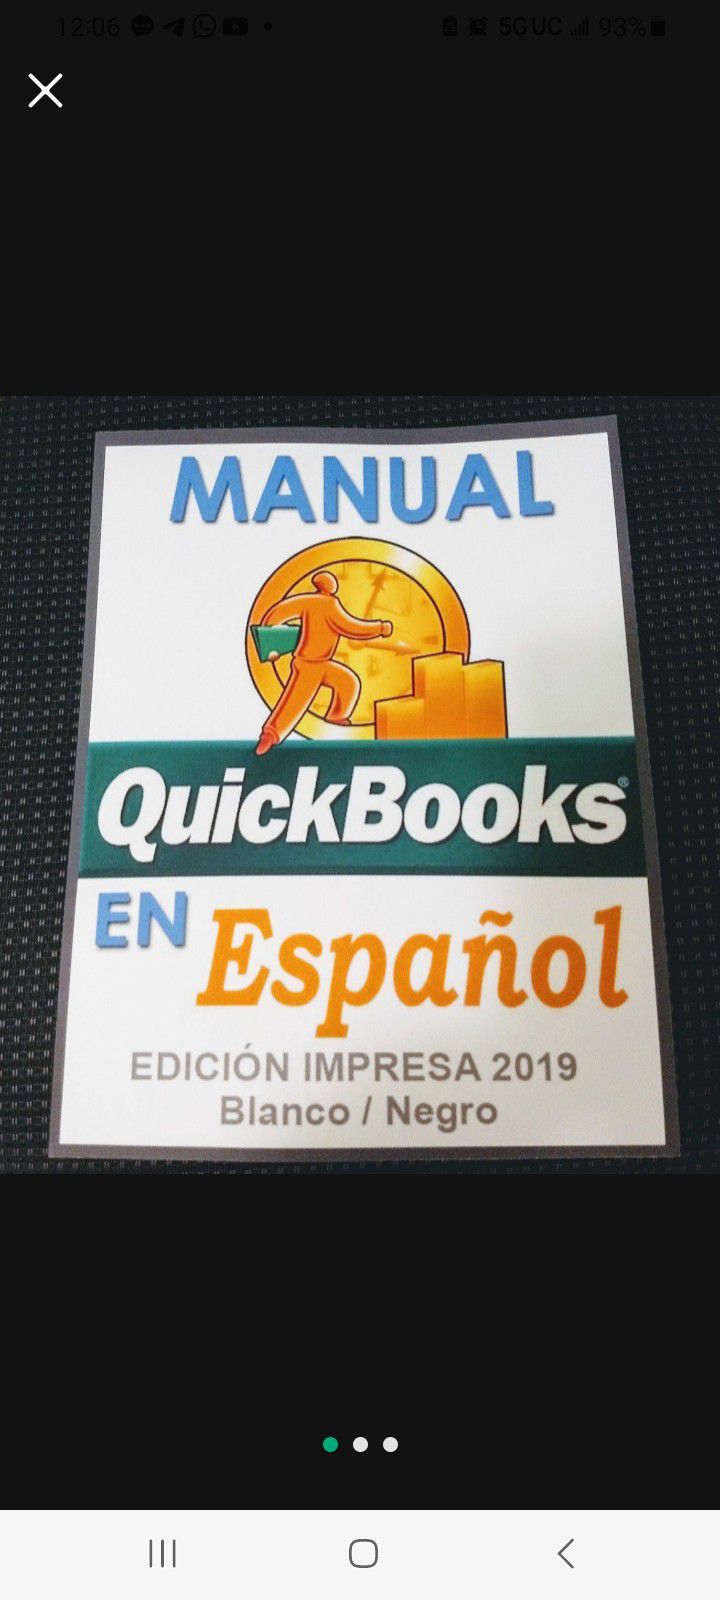 QuickBooks en Espanol 2019 Paperback book